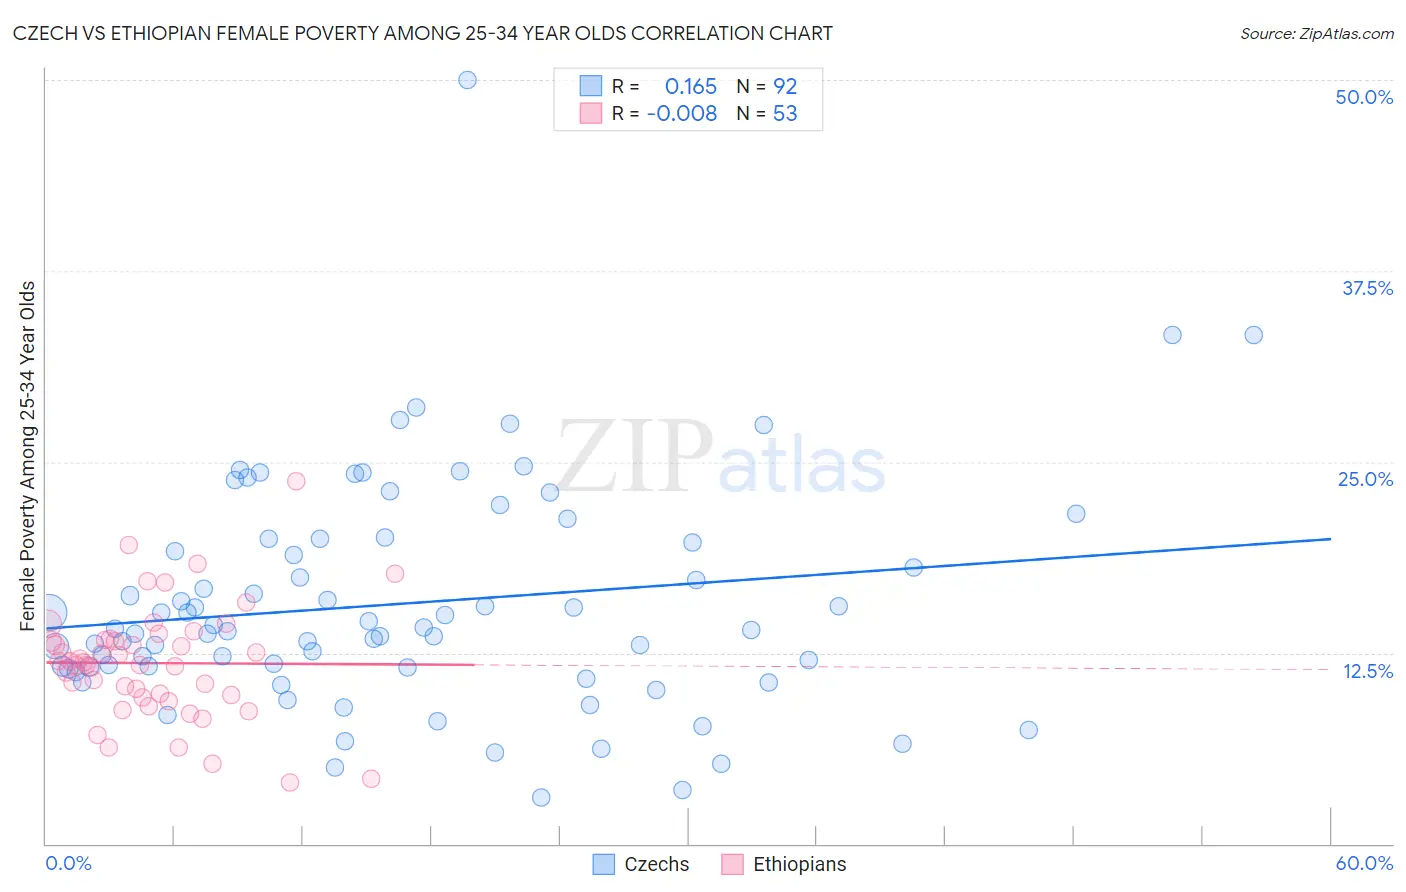 Czech vs Ethiopian Female Poverty Among 25-34 Year Olds